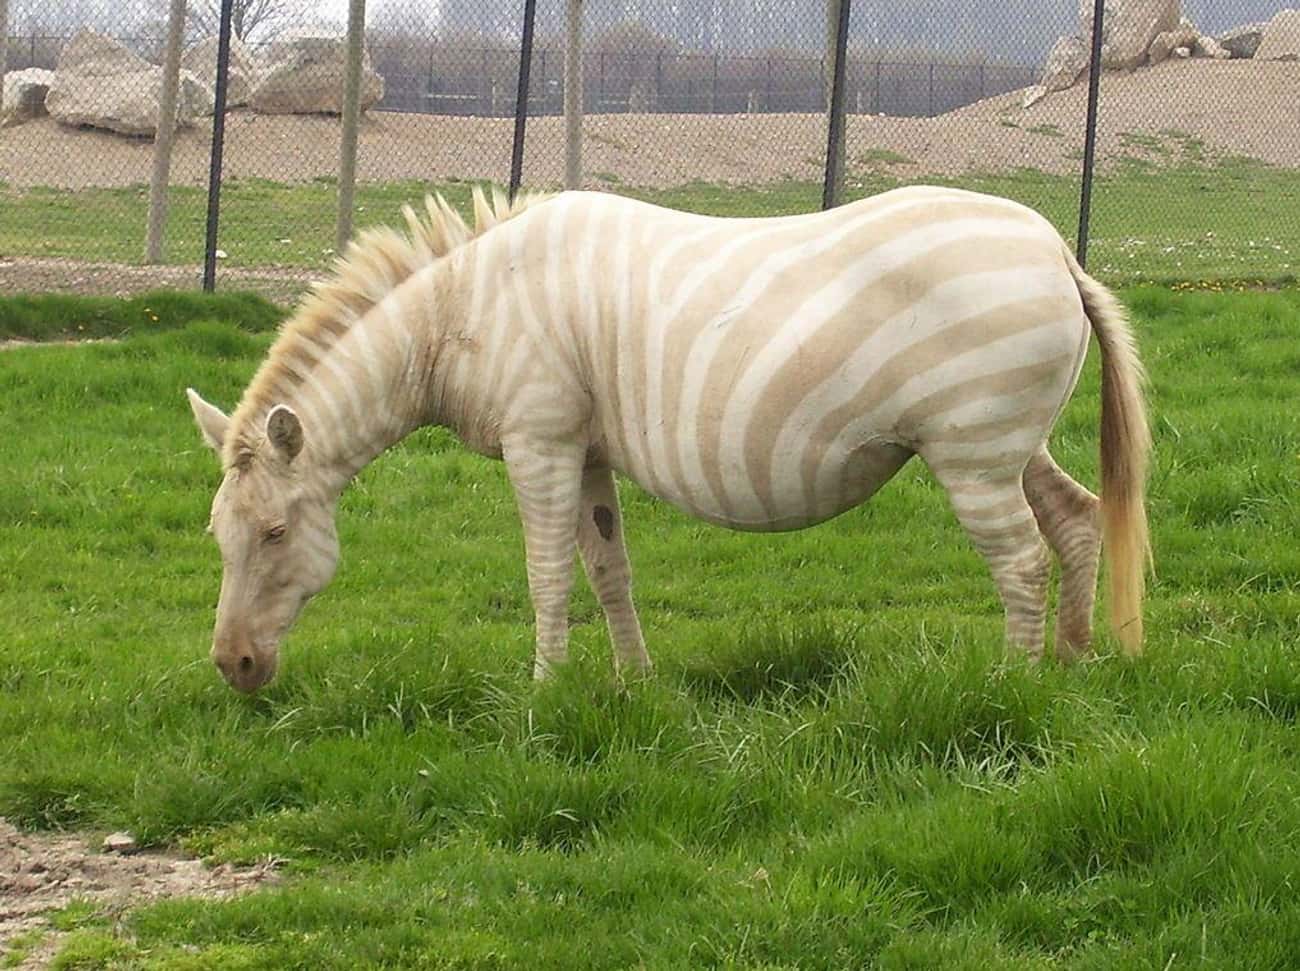 An Albino Zebra